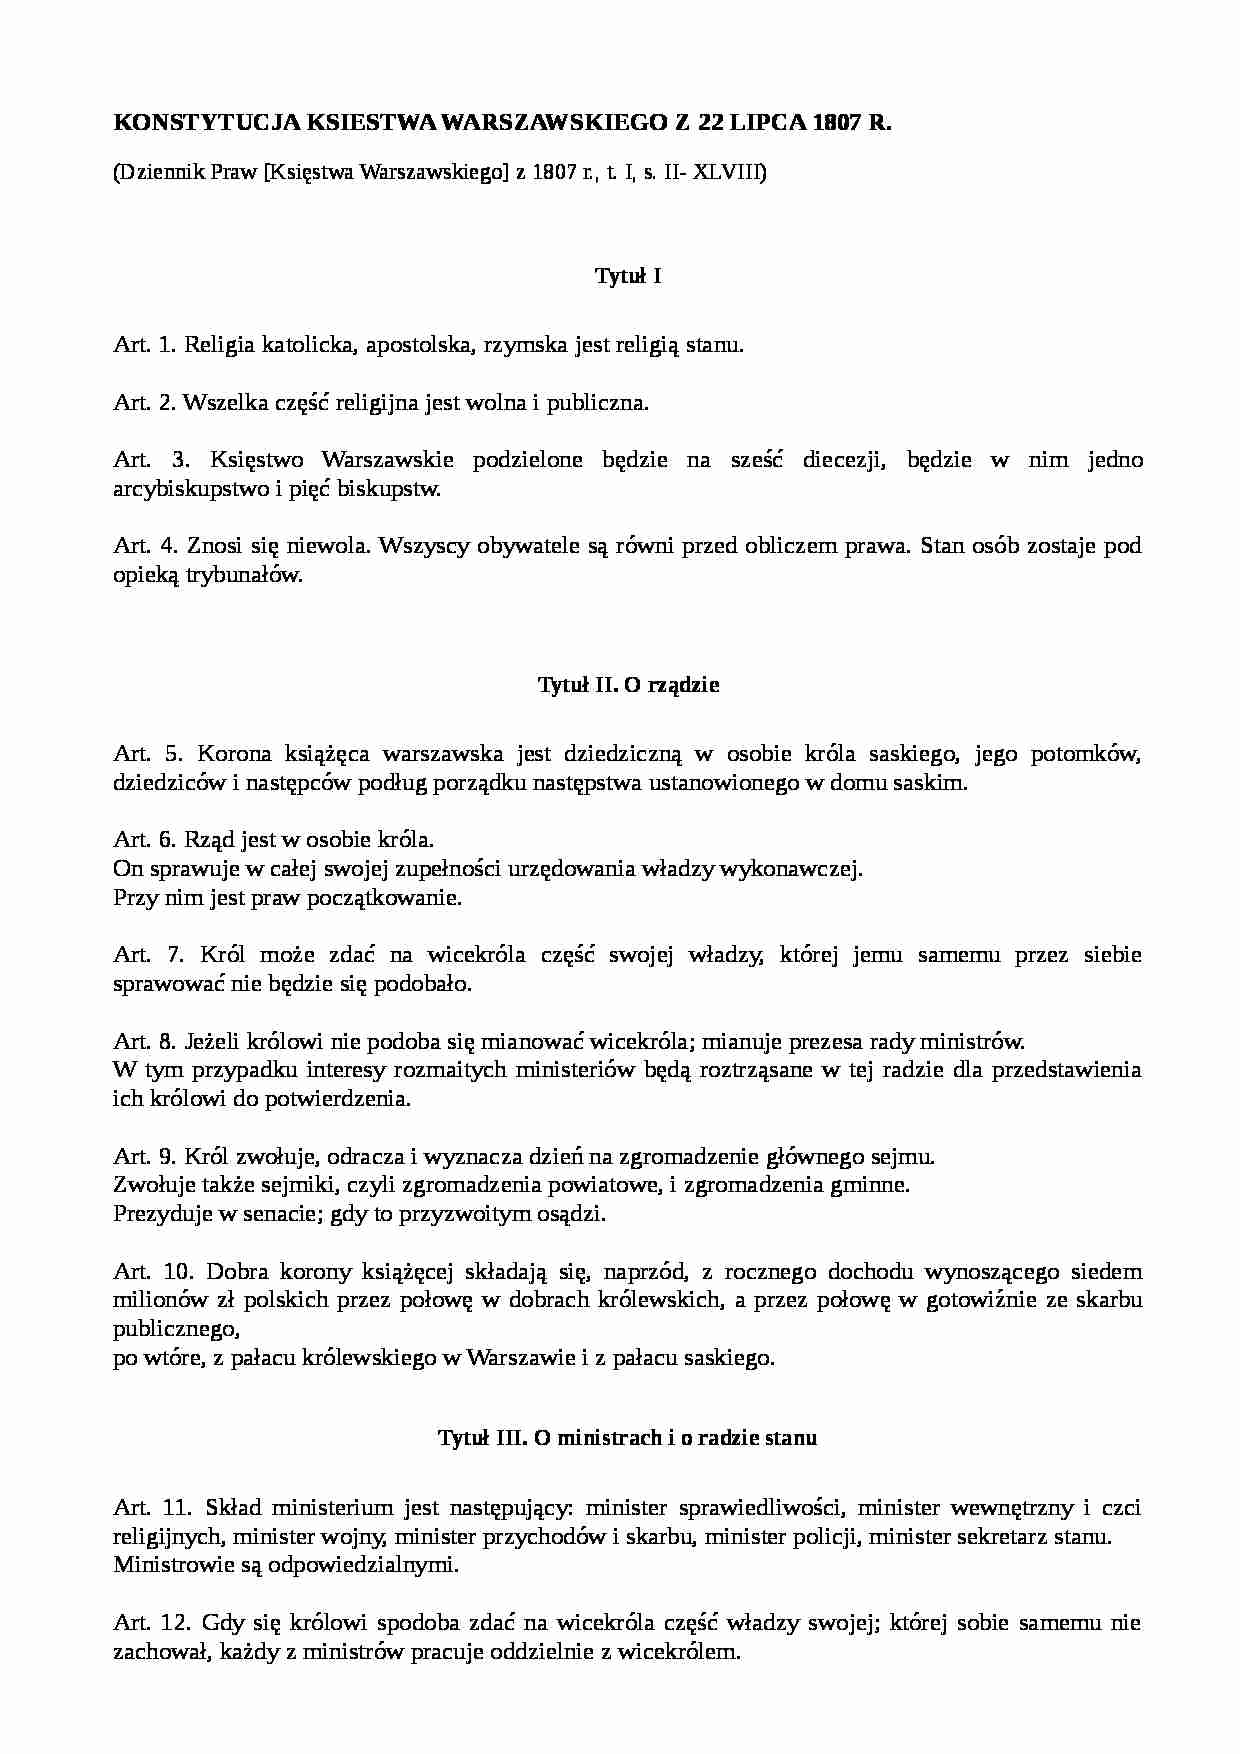 Konstytucja Księstwa Warszawskiego - omówienie  - strona 1